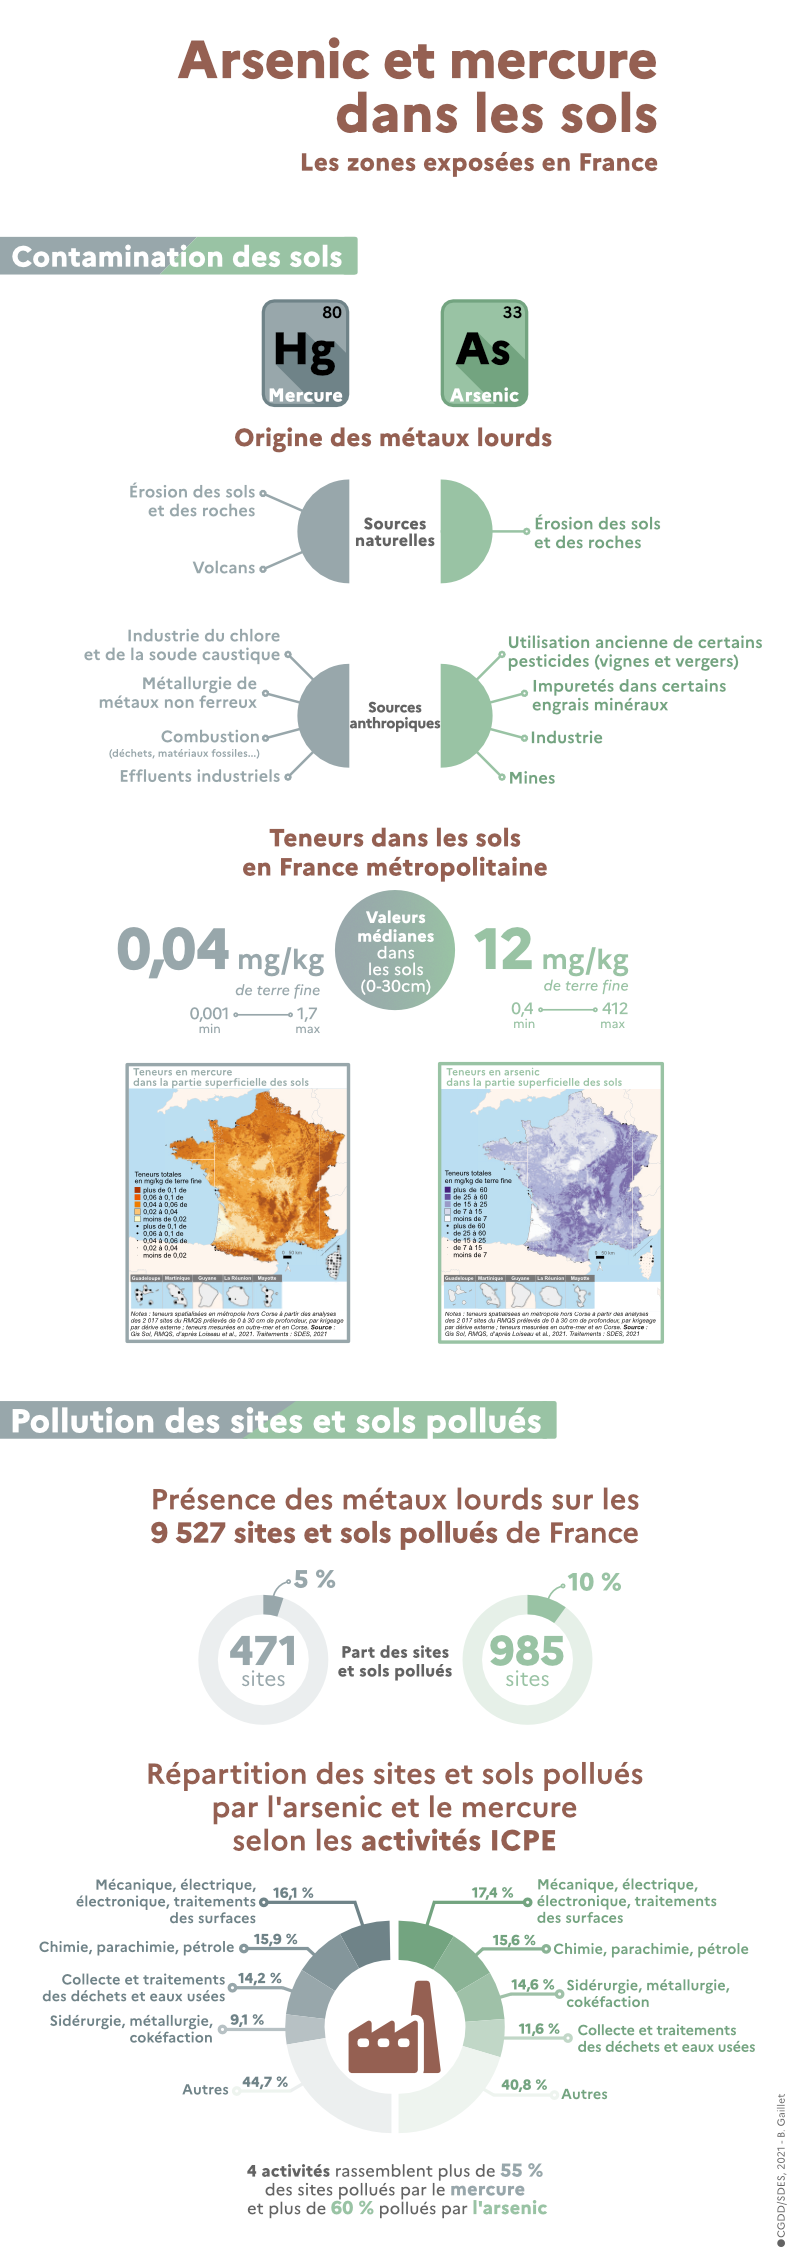 Un peu plus de 10 % des 9.527 sites pollués en France contiennent de l'arsenic